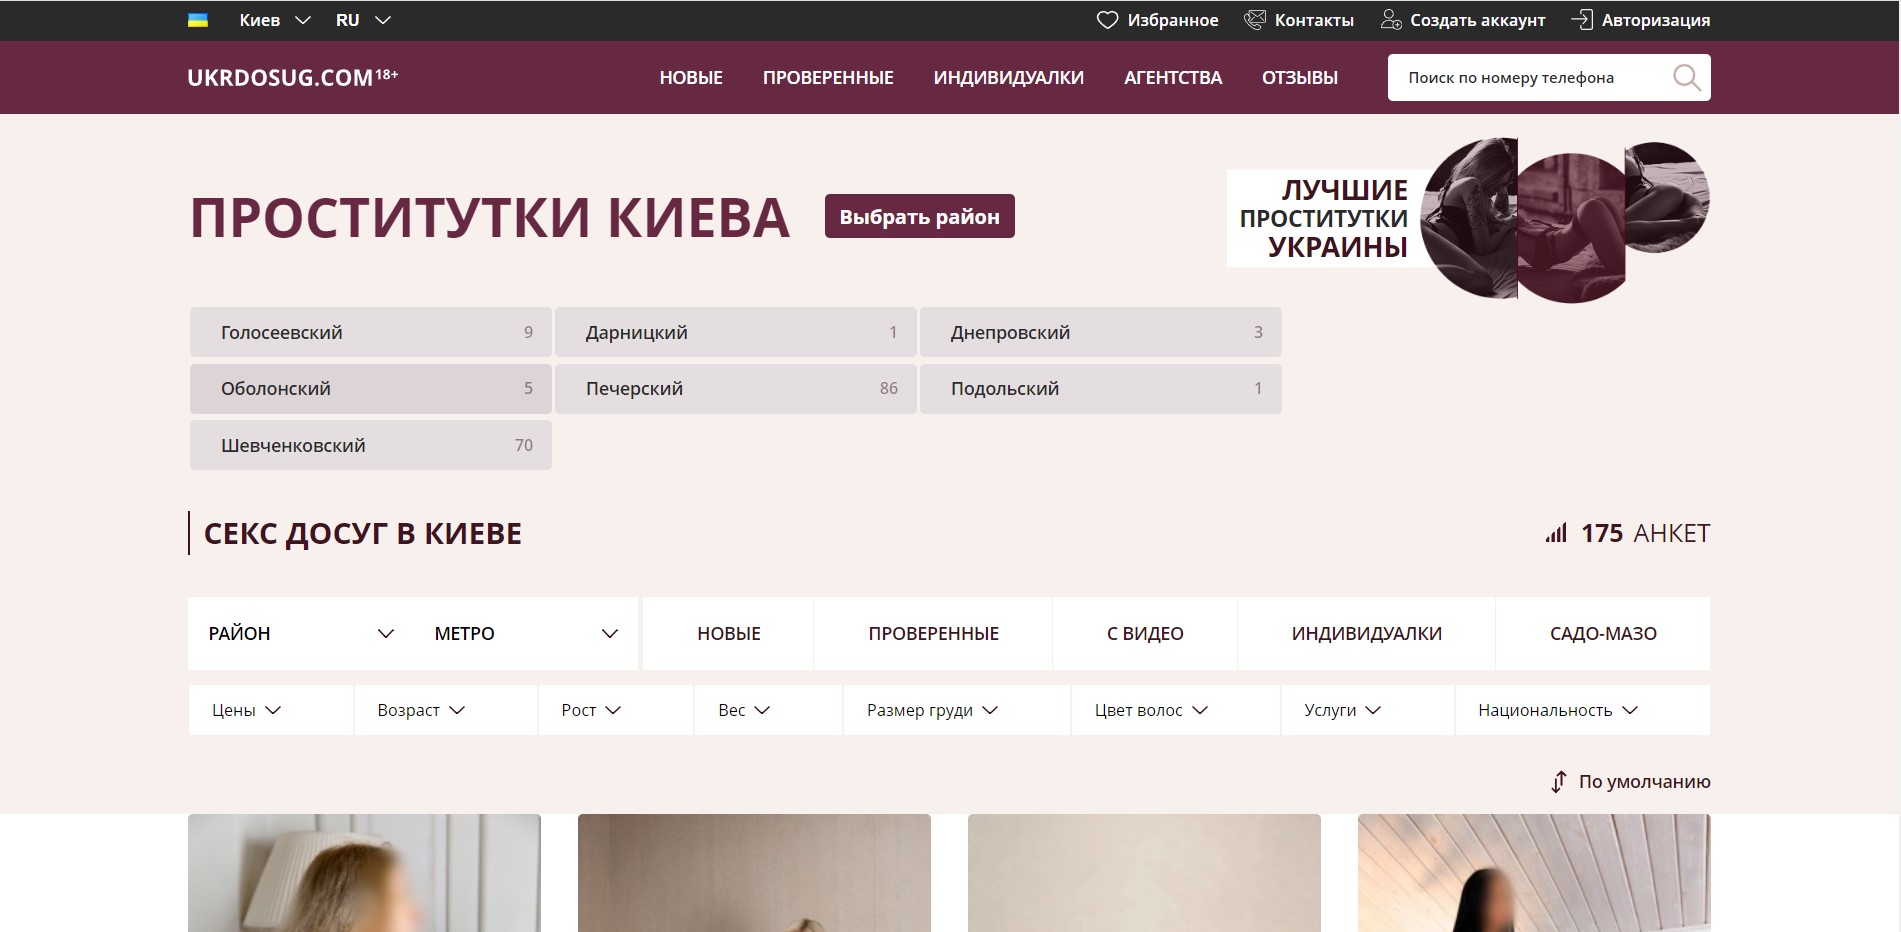 Настоящие анкеты украинских проституток в Киеве